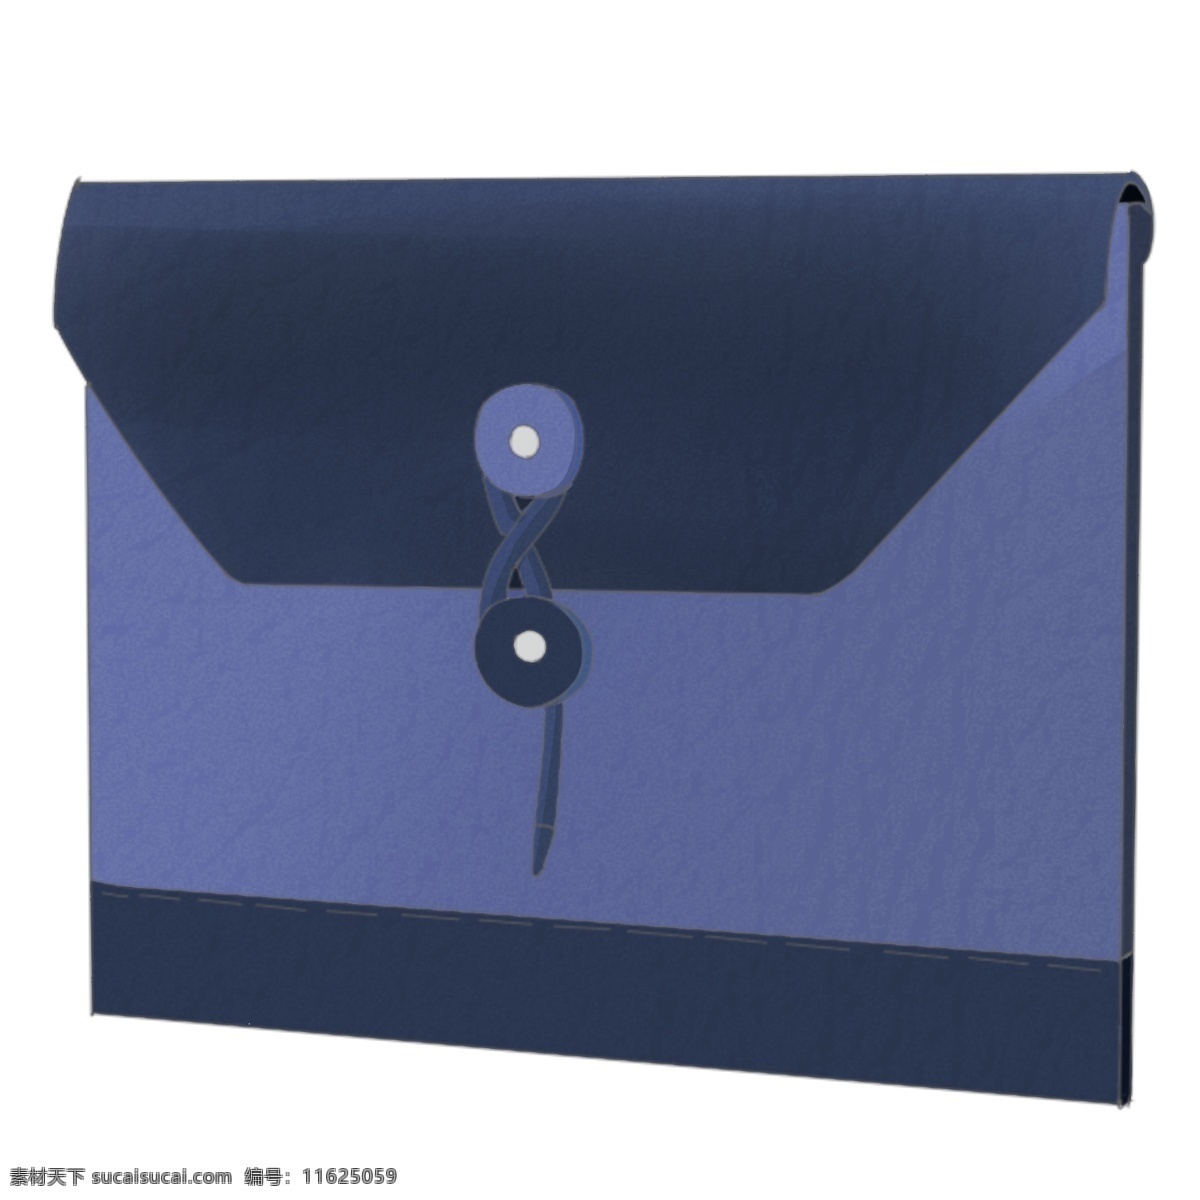 蓝色 文件包 插画 蓝色的文件包 漂亮的文件包 手绘文件包 卡通文件包 文件包装饰 文件包插画